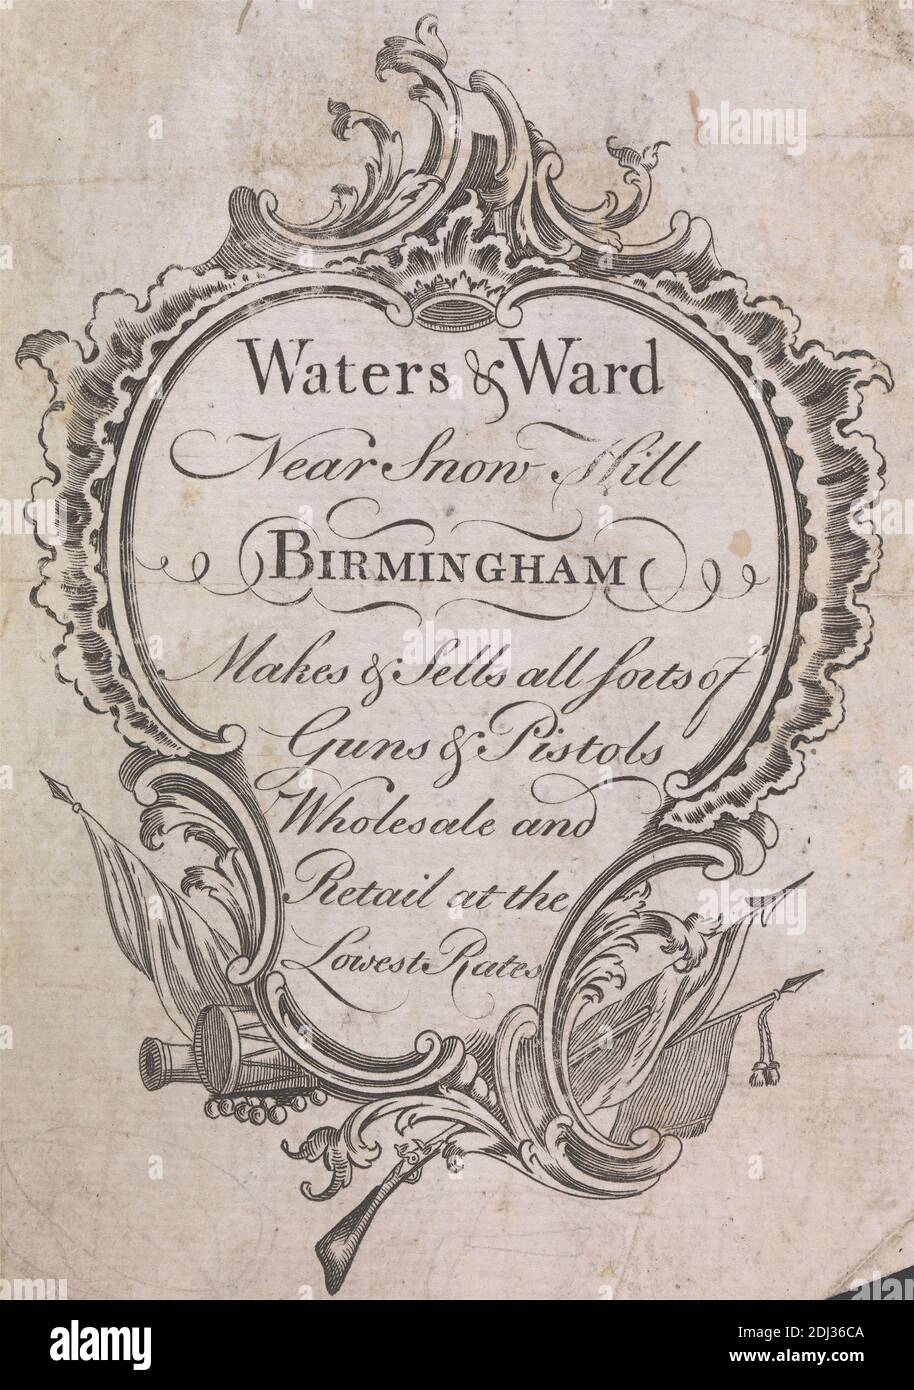 Tauschkarte für Water's and ward, Gun-Makers of Snow Hill, Birmingham, unbekannter Künstler, achtzehnten Jahrhundert, ca. 1770 Stockfoto